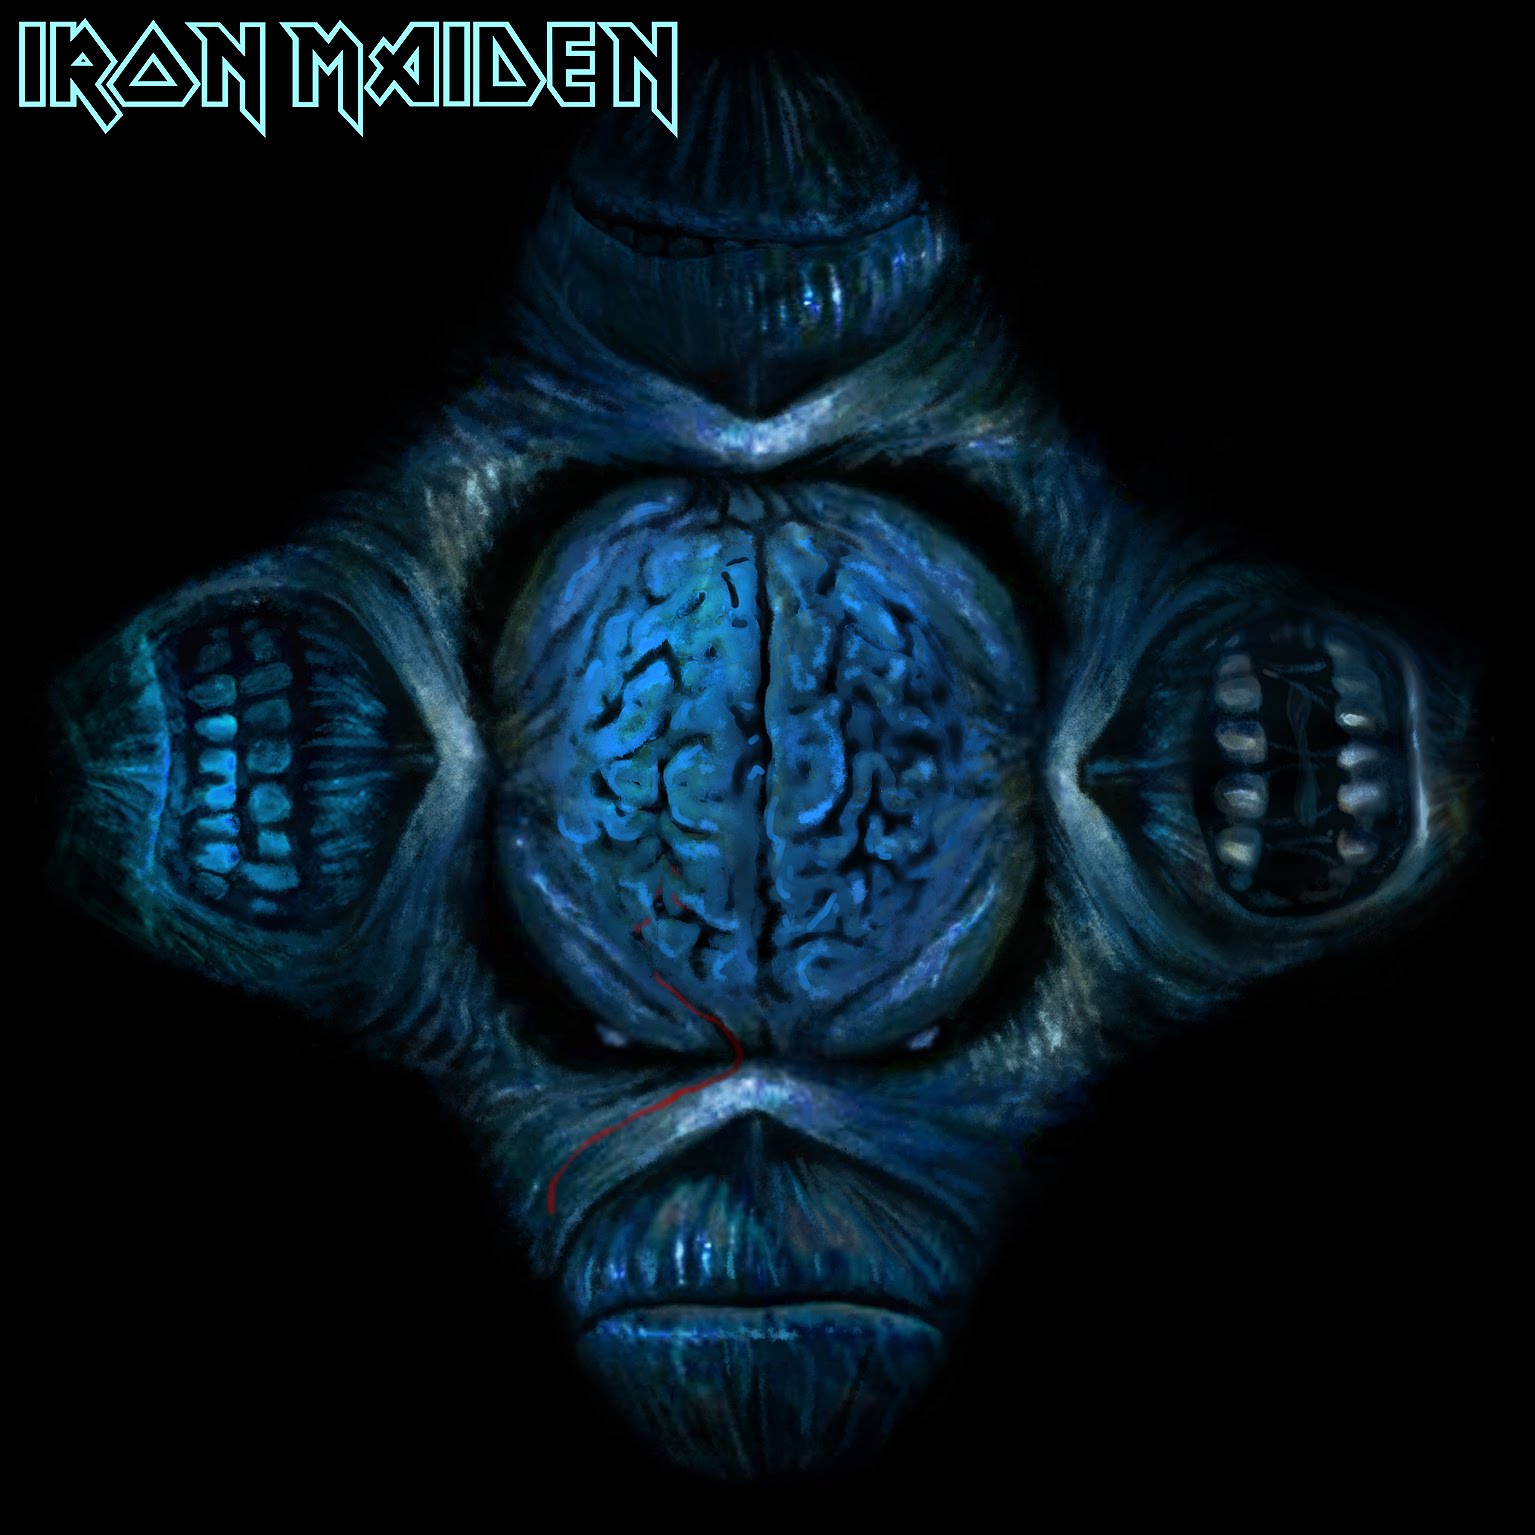 Nuevo disco de Iron Maiden - The Final Frontier, el 16 de Agosto - Página 5 34FourFaces